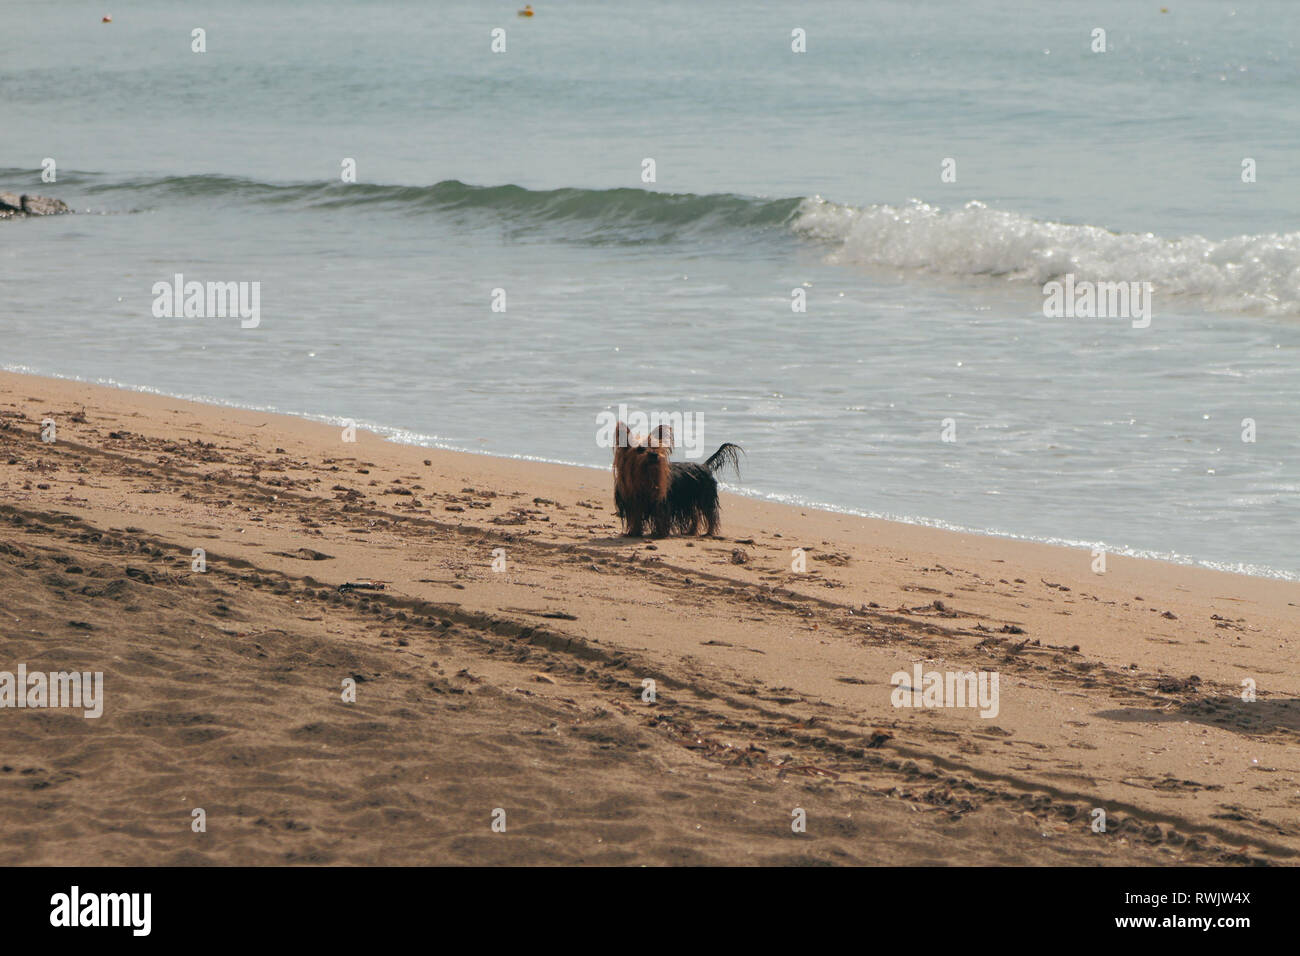 Dog on walk on autumn beach. Santa Marinella, Italy Stock Photo